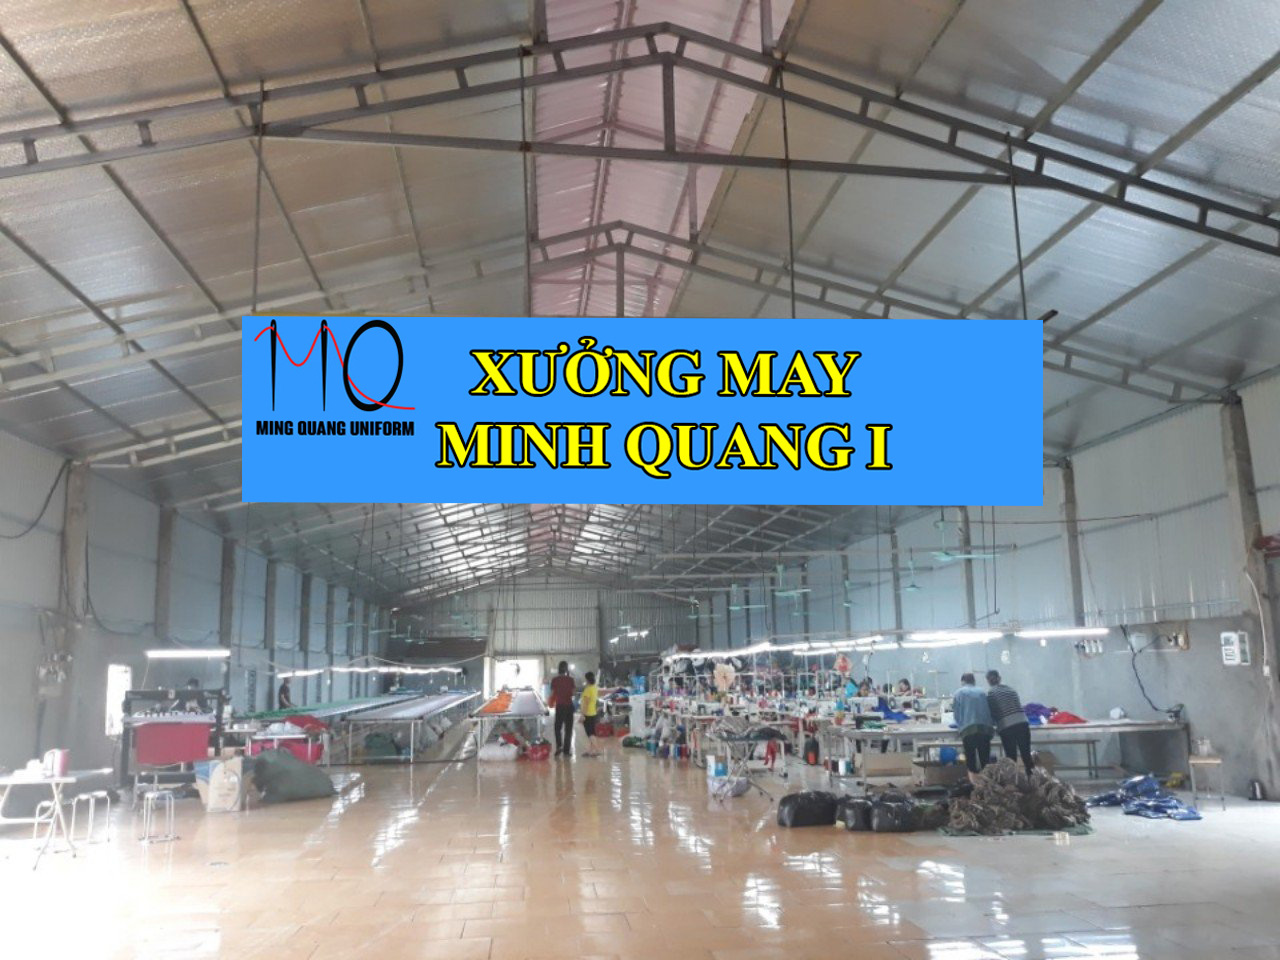 Xưởng may Minh Quang I